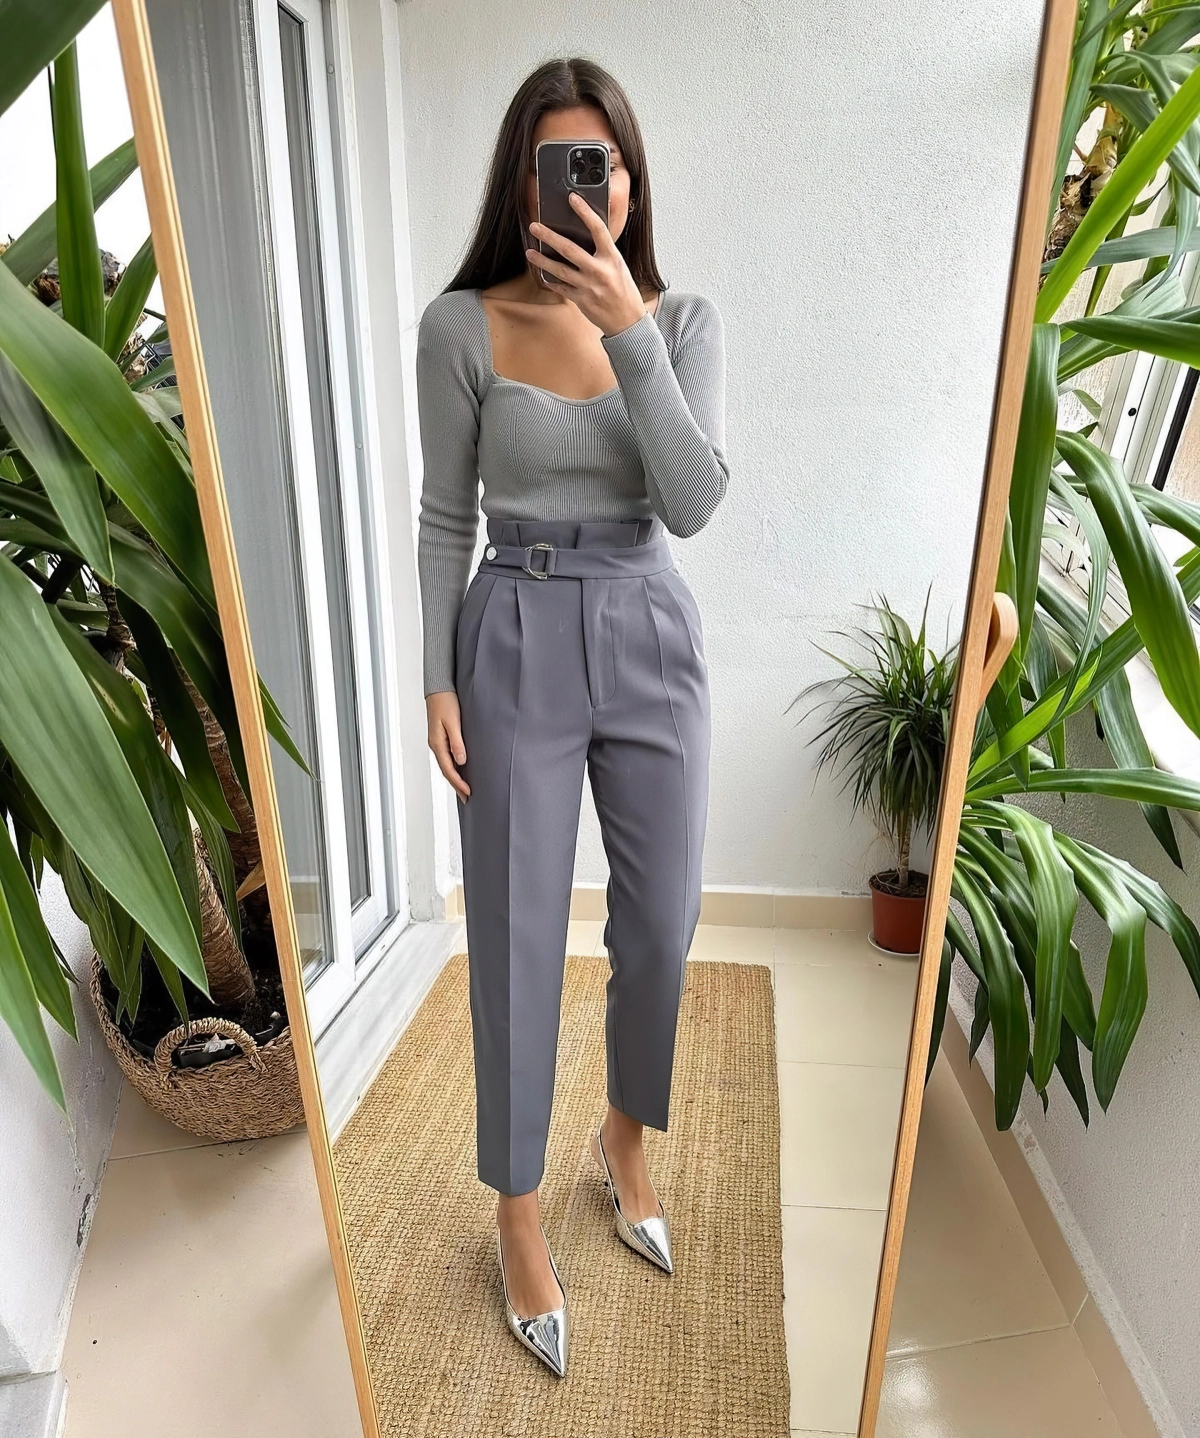 blouse ajustee couleur gris clair pantalon taille haute ceinture chaussures metalliques